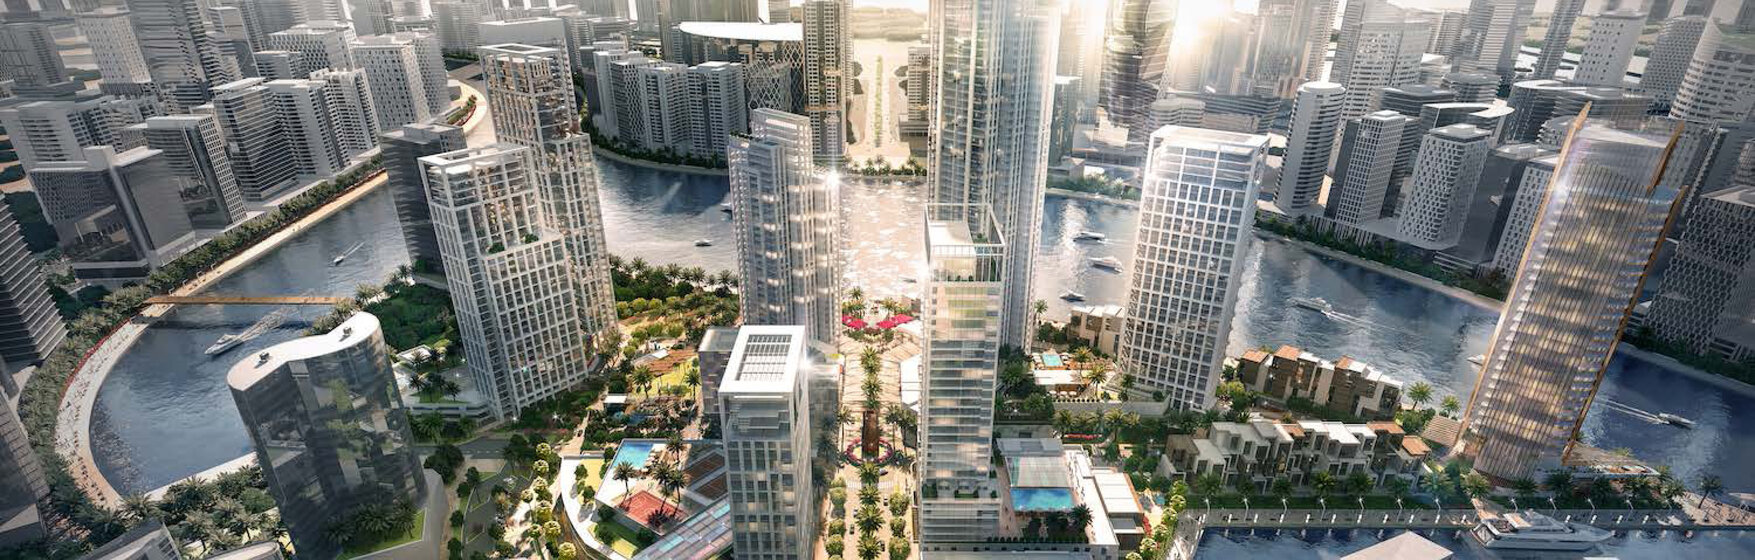 Edificios nuevos - Dubai, United Arab Emirates - imagen 4